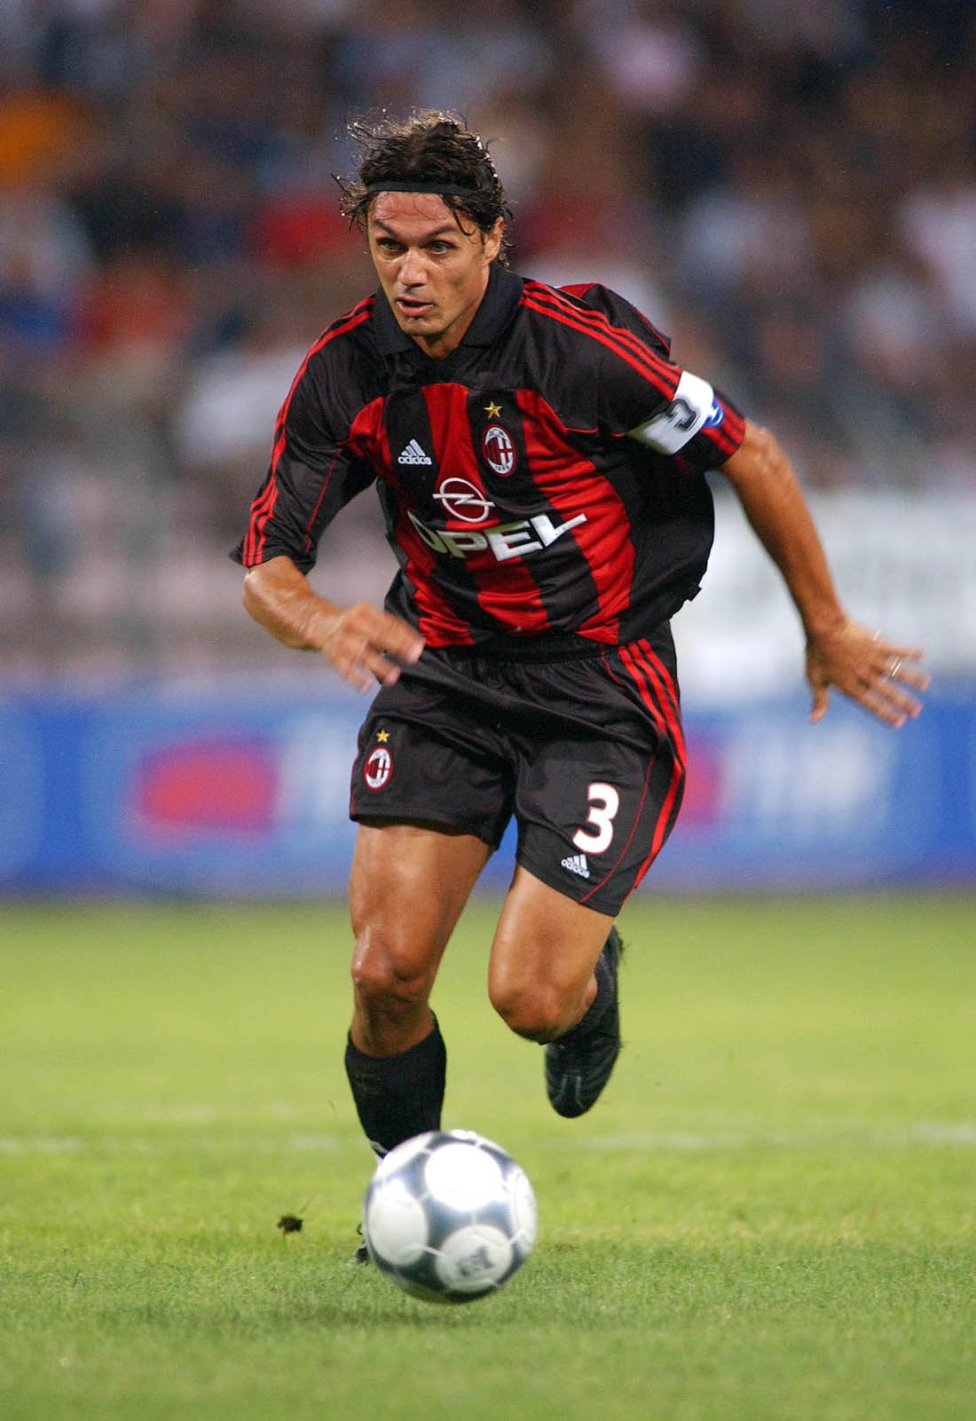 3. Paolo Maldini